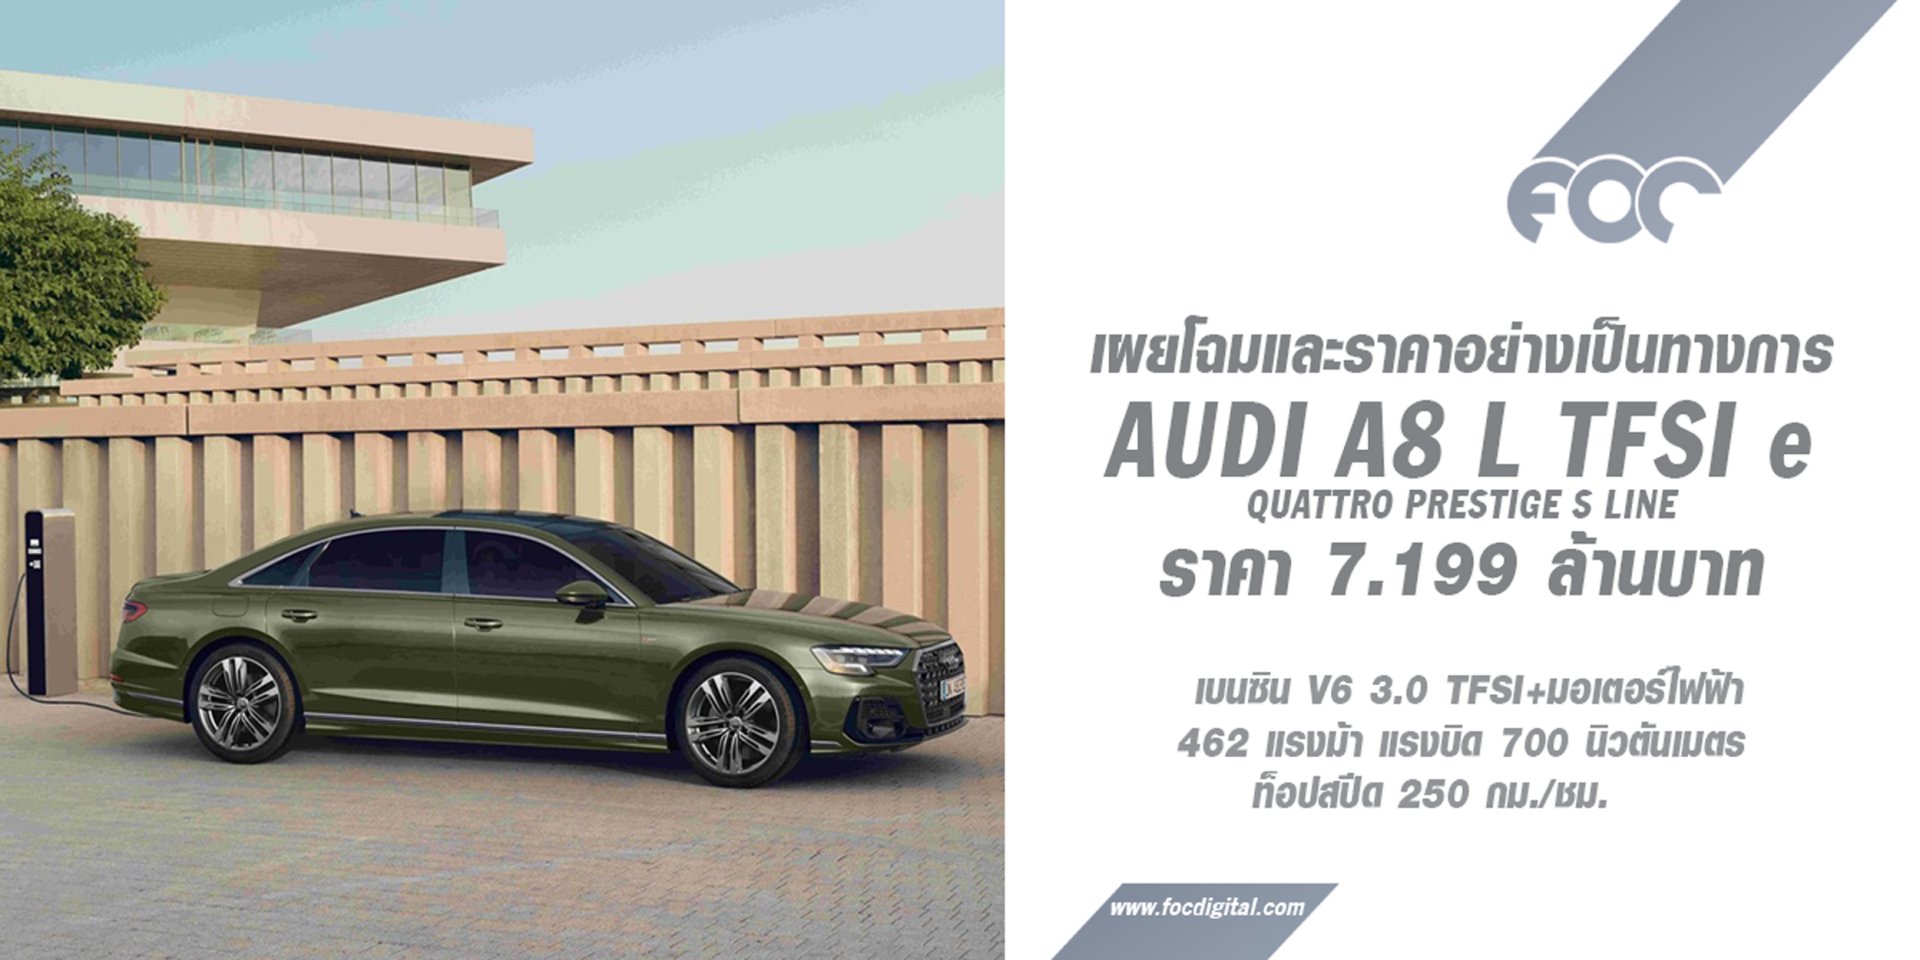 รุ่นแฟลกชิป Audi A8 L TFSI e เคาะราคา 7.199 ล้านบาท